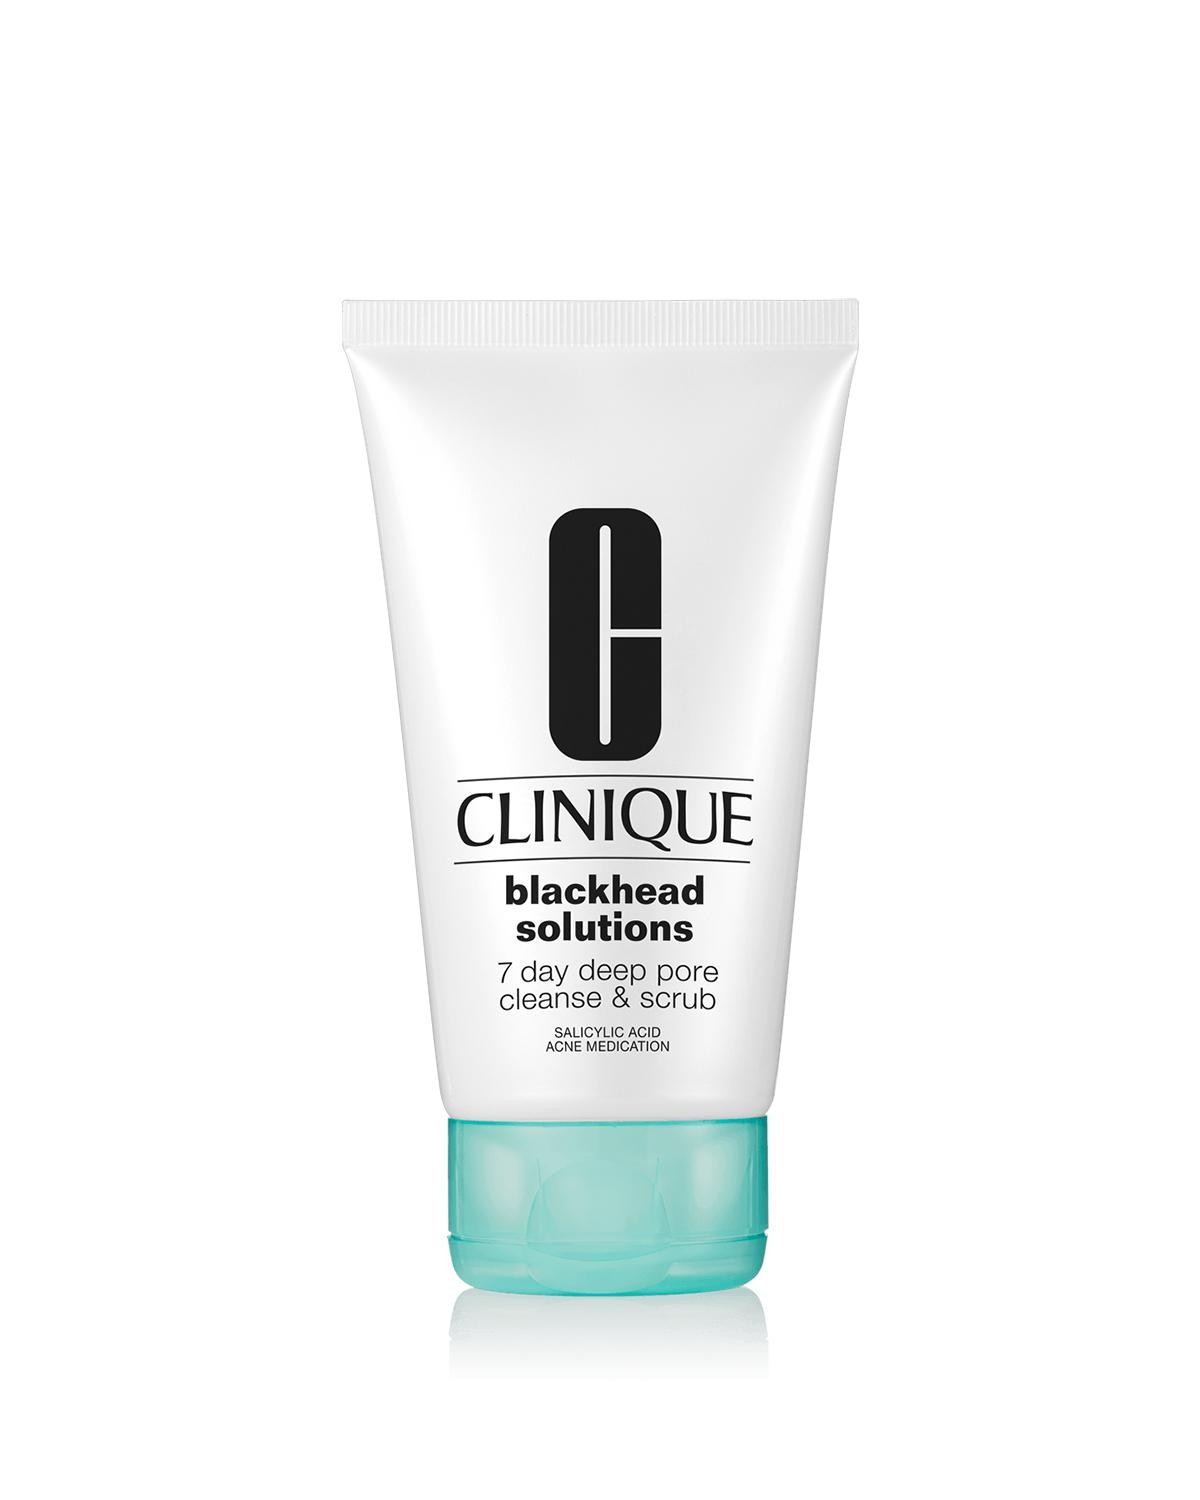 Clinique Blackhead Solutions 7 Day Deep Pore Cleanse & Scrub, 125ml